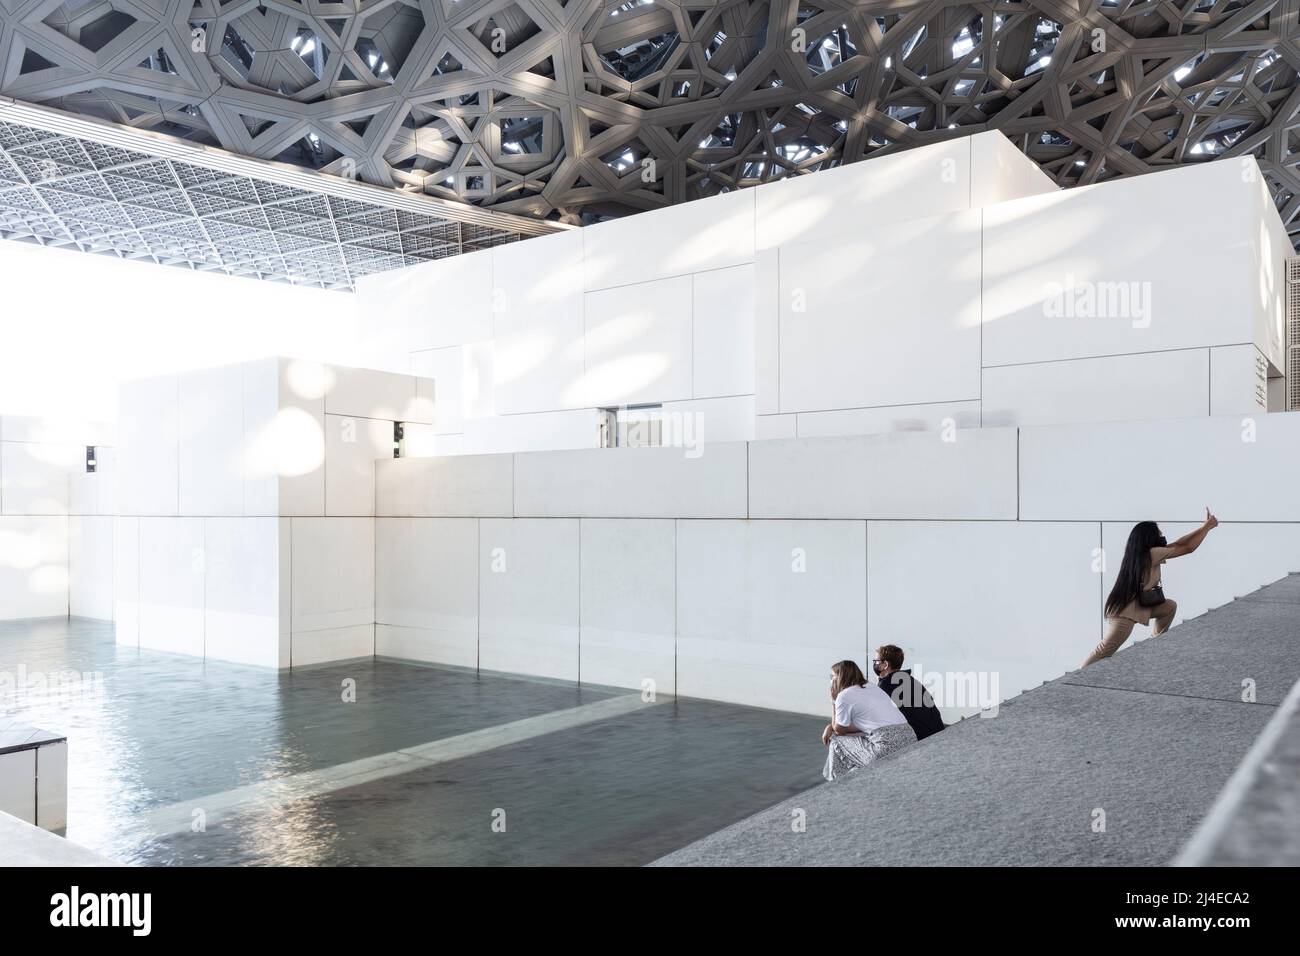 SAADIYAT ISLAND, ABU DHABI, UNITED ARAB EMIRATES - October 16, 2021: The Louvre Abu Dhabi designed by architect Jean Nouvel on Saadiyat Island. Stock Photo